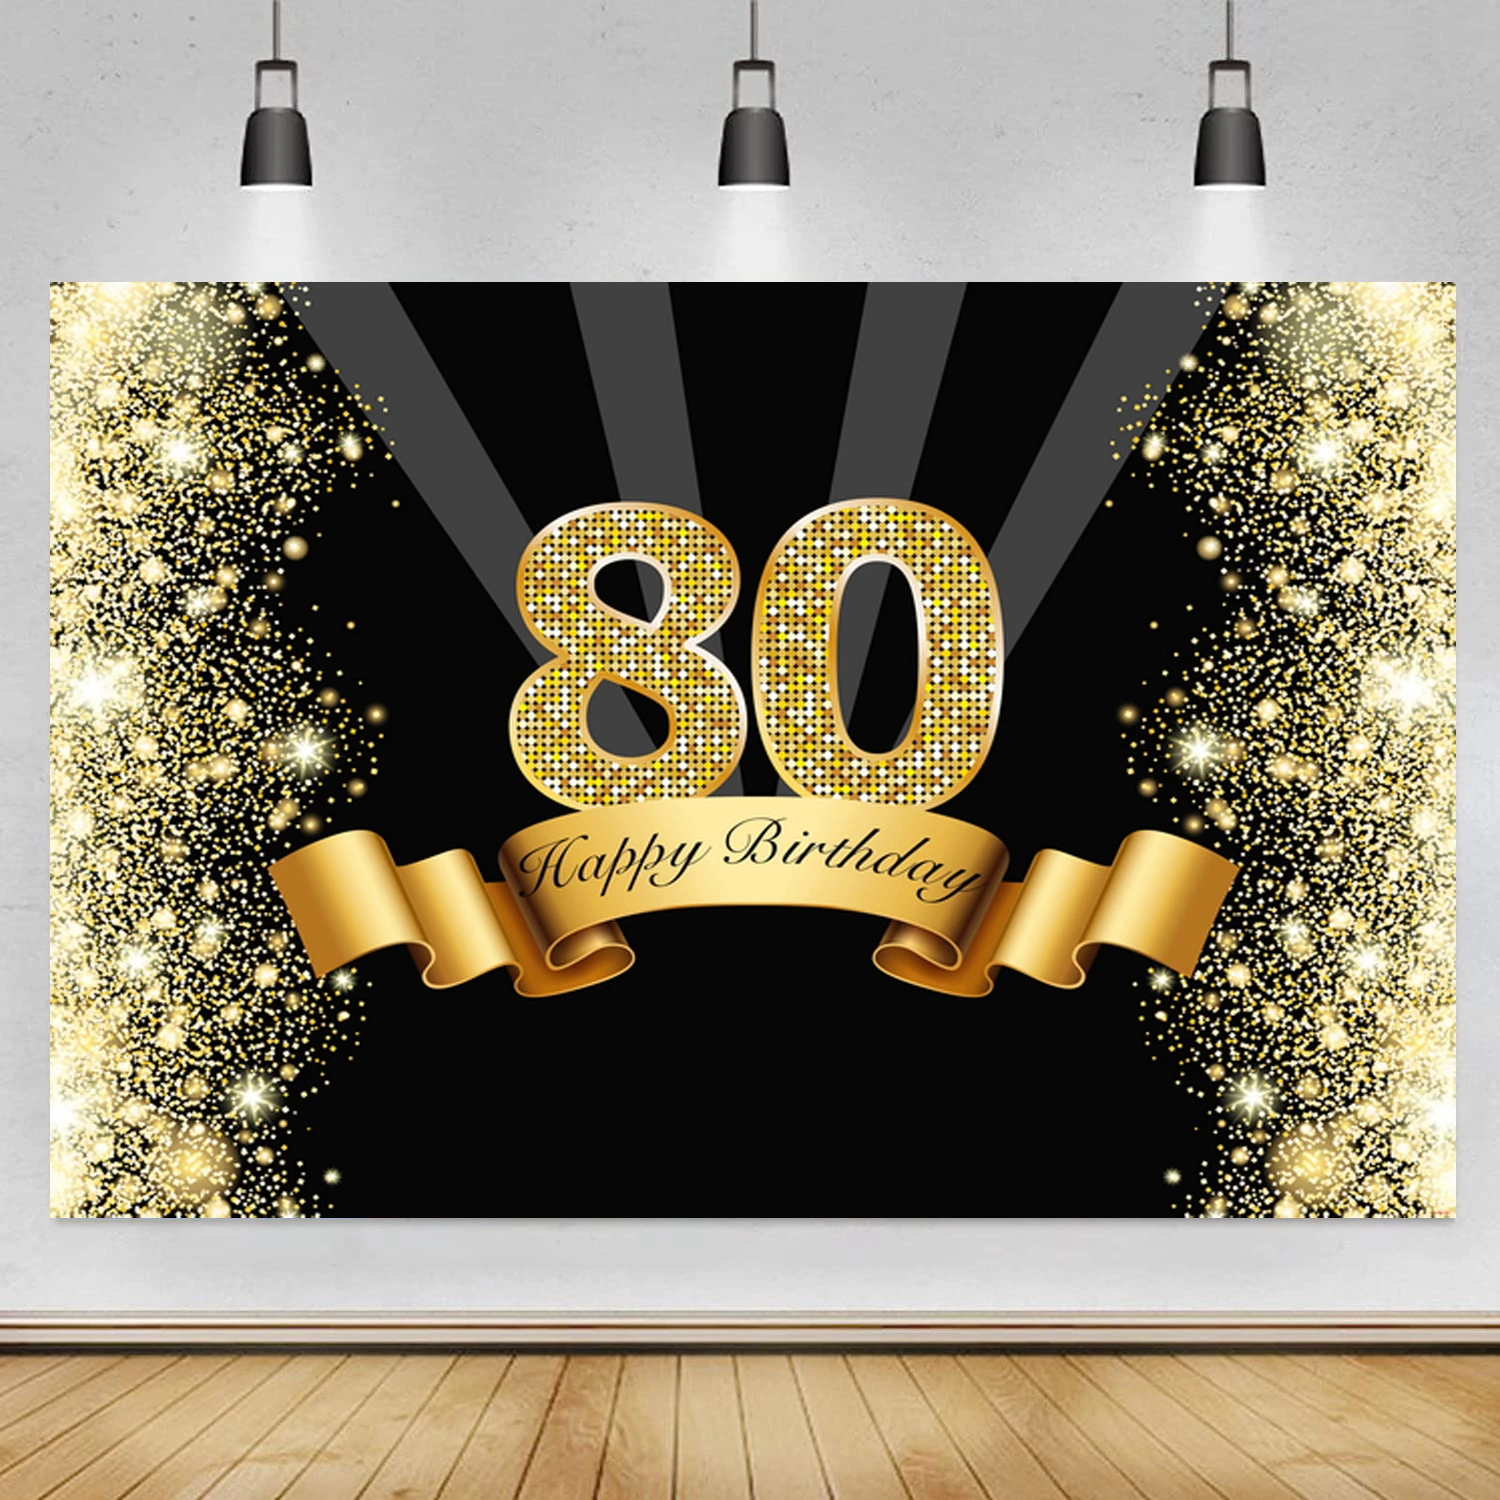 Một phông nền sinh nhật 80 được tô điểm bằng màu đen và vàng sẽ là sự lựa chọn đúng đắn cho bữa tiệc sinh nhật của bạn. Với gam màu tươi sáng, hình ảnh đầy sinh động, bạn và khách mời sẽ có những khoảnh khắc vui tươi và đáng nhớ. Hãy truy cập hình ảnh liên quan để cảm nhận.